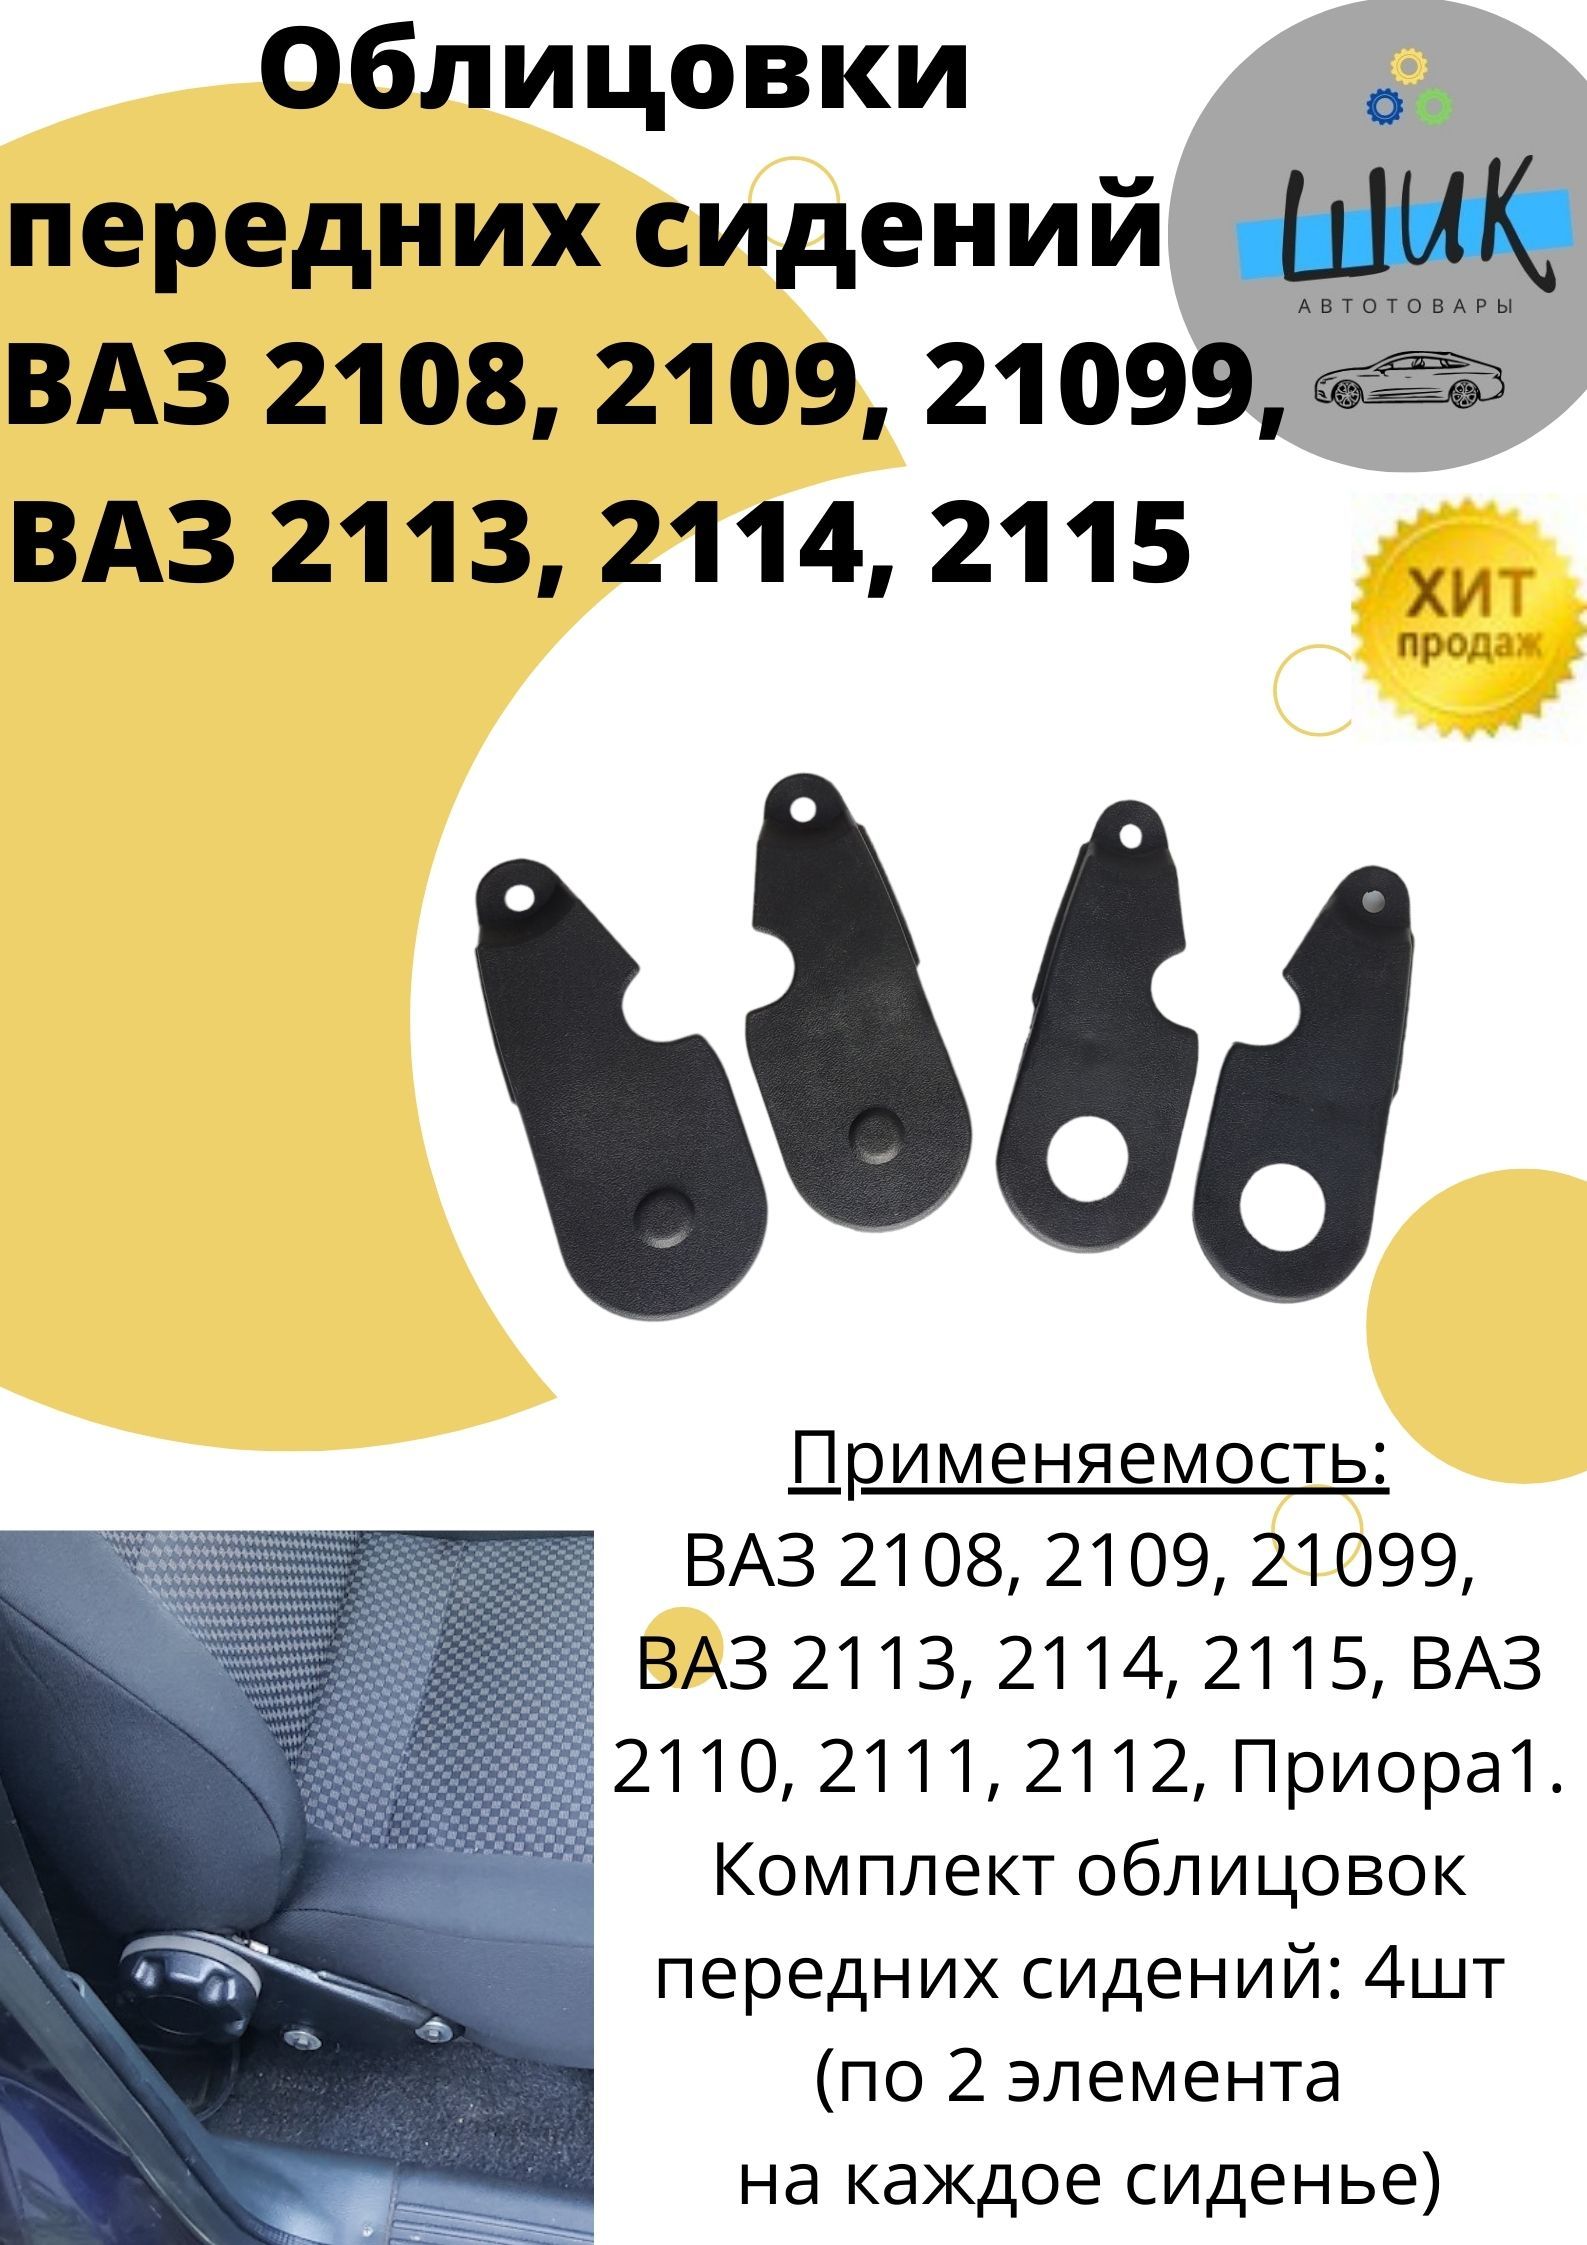 Анатомические сидения для ВАЗ 2110